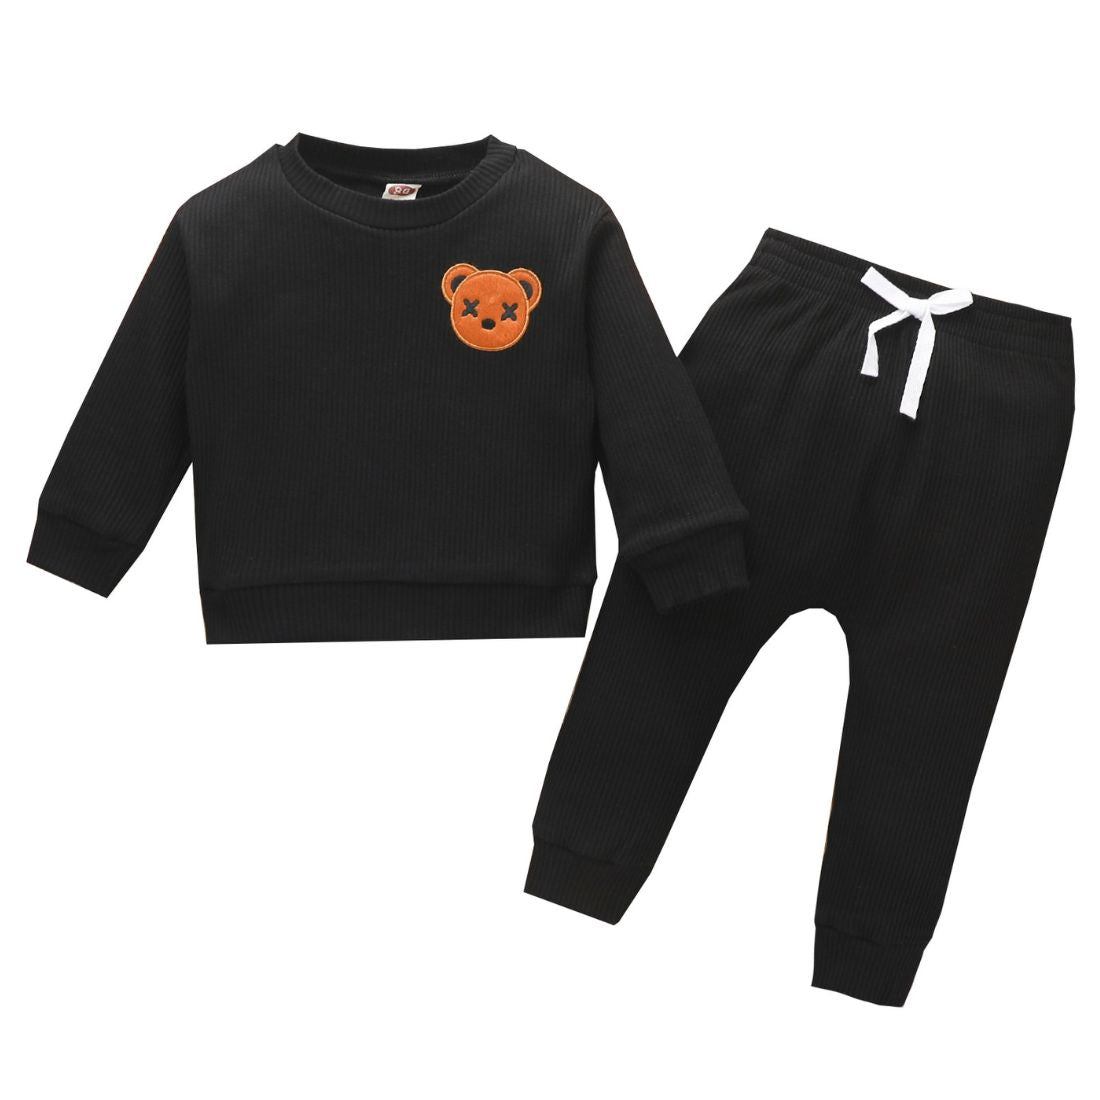 Bear Patch Toddler Clothing Set | Black